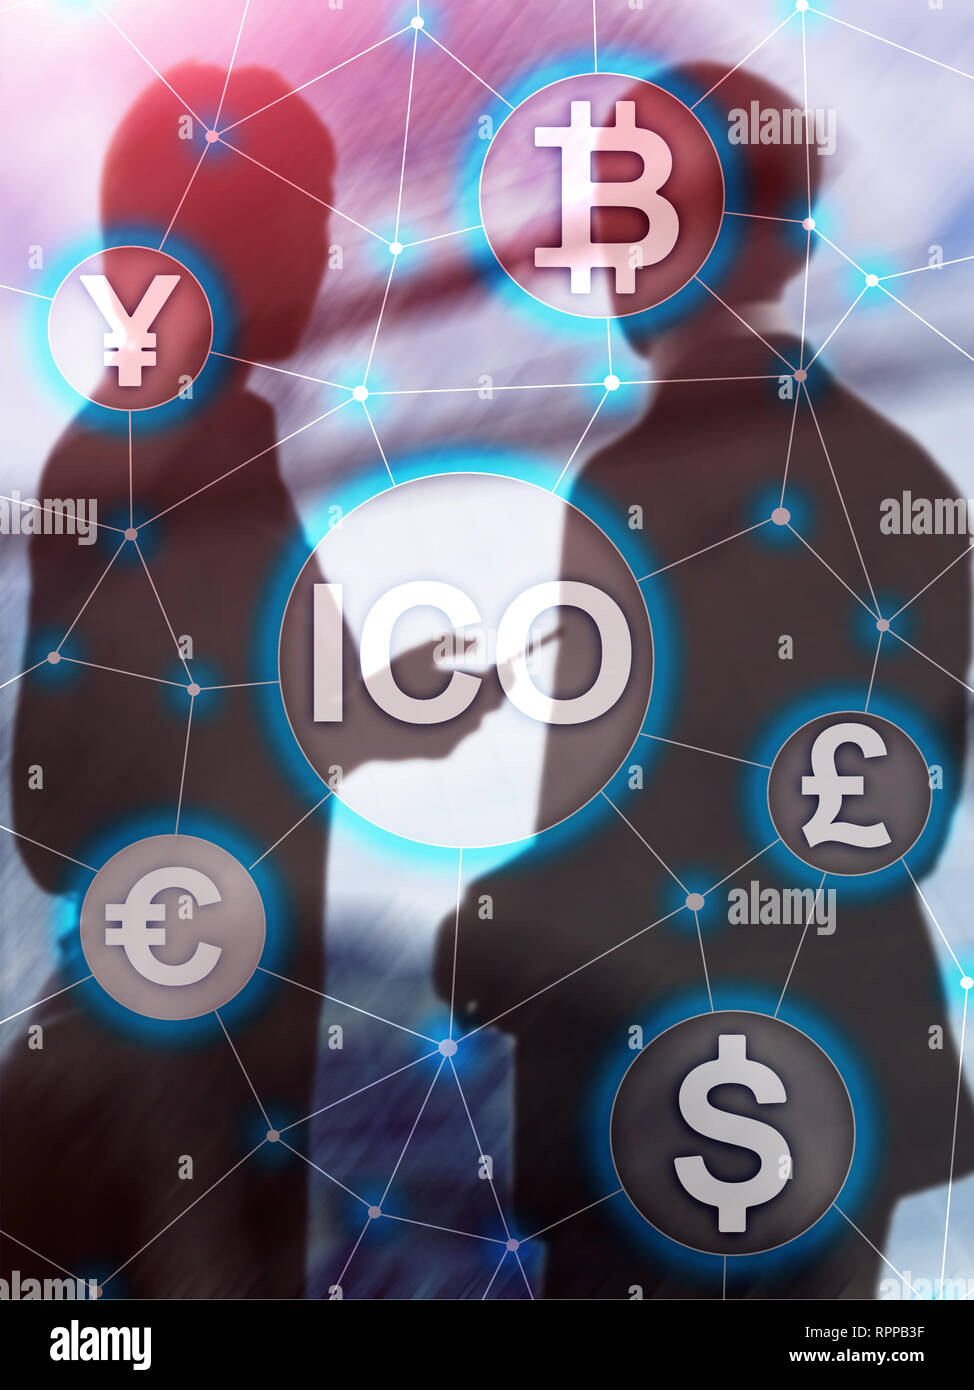 ICO - pièce initiale offrant, Blockchain et cryptocurrency concept sur l'arrière-plan flou bâtiment d'entreprise. Résumé de couverture format vertical. Banque D'Images